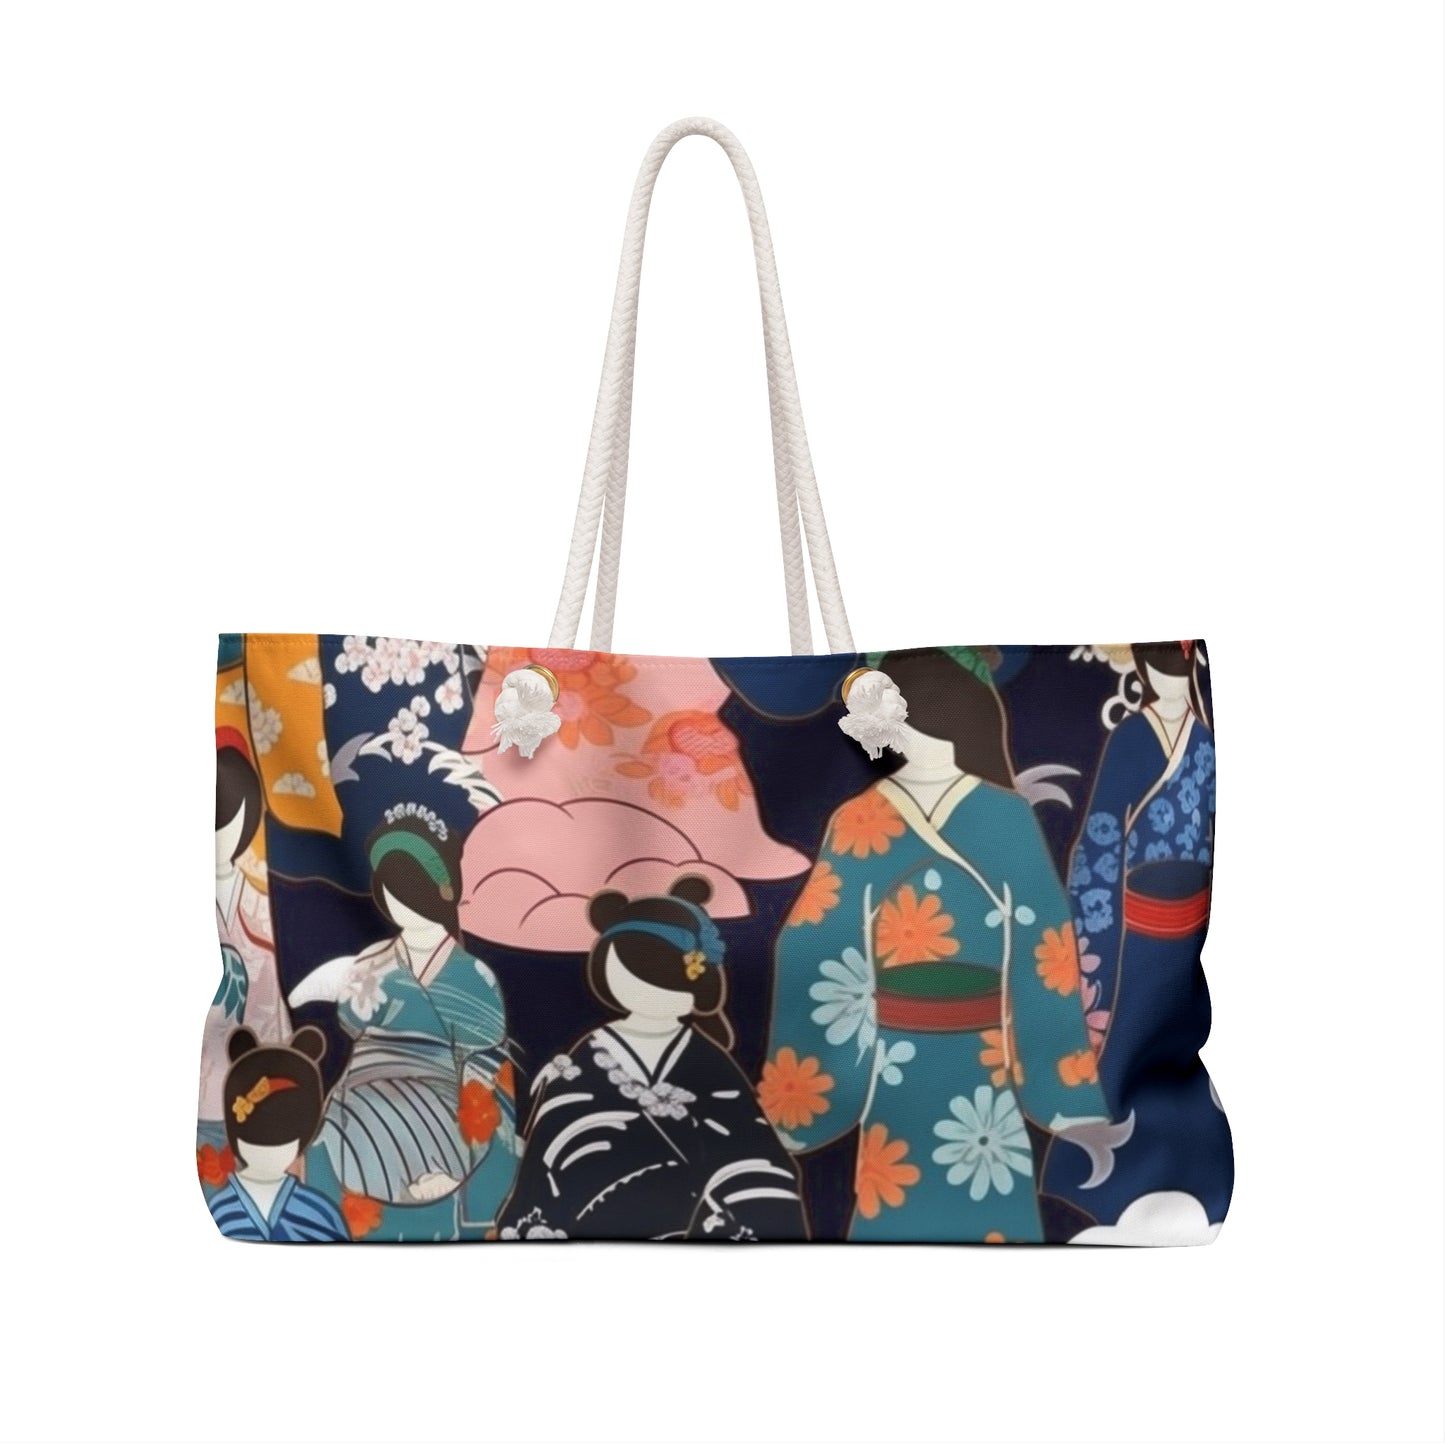 Kimono Dreams Weekender Bag: Experience Japanese Elegance